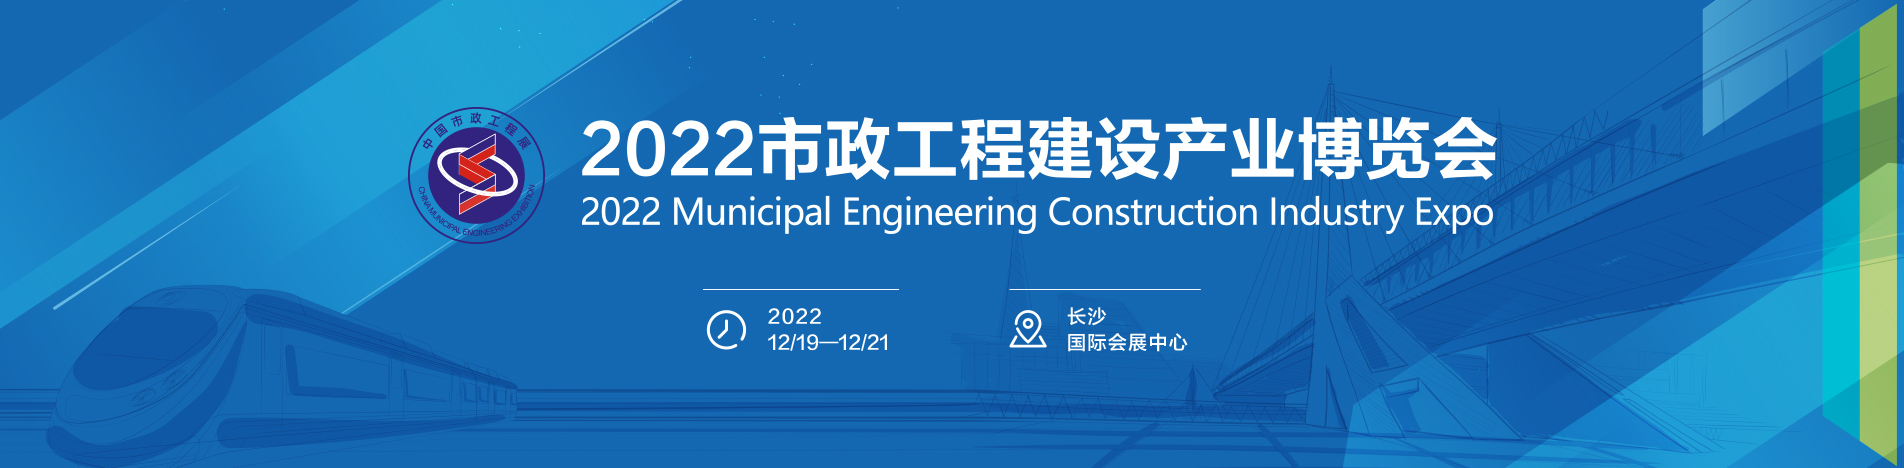 2023中国环卫装备与市政工程展览会-迈进环卫发展新征程 科技引领共创城市管家新篇章